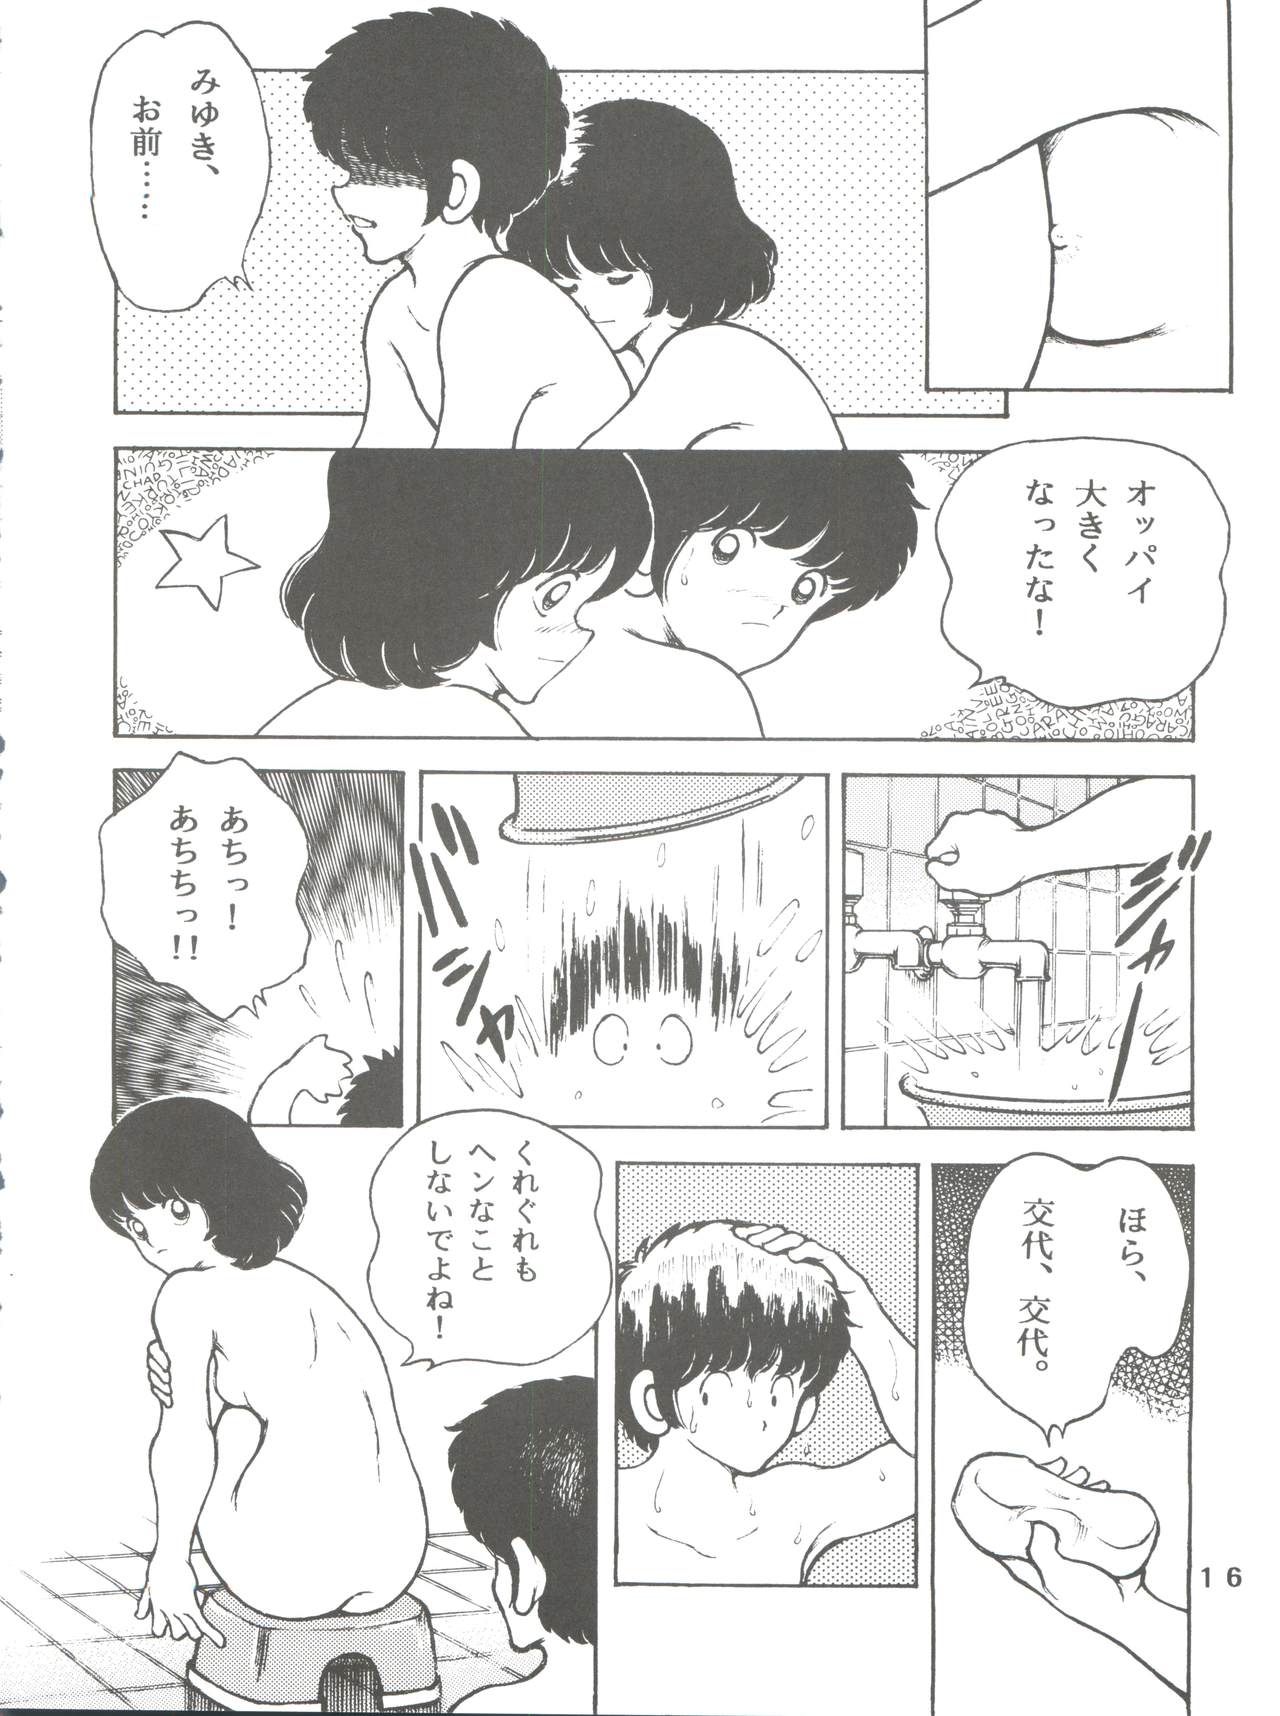 [STUDIO SHARAKU (Sharaku Seiya)] Kanshoku -TOUCH- vol.5 (Miyuki) [2000-08-13] page 16 full